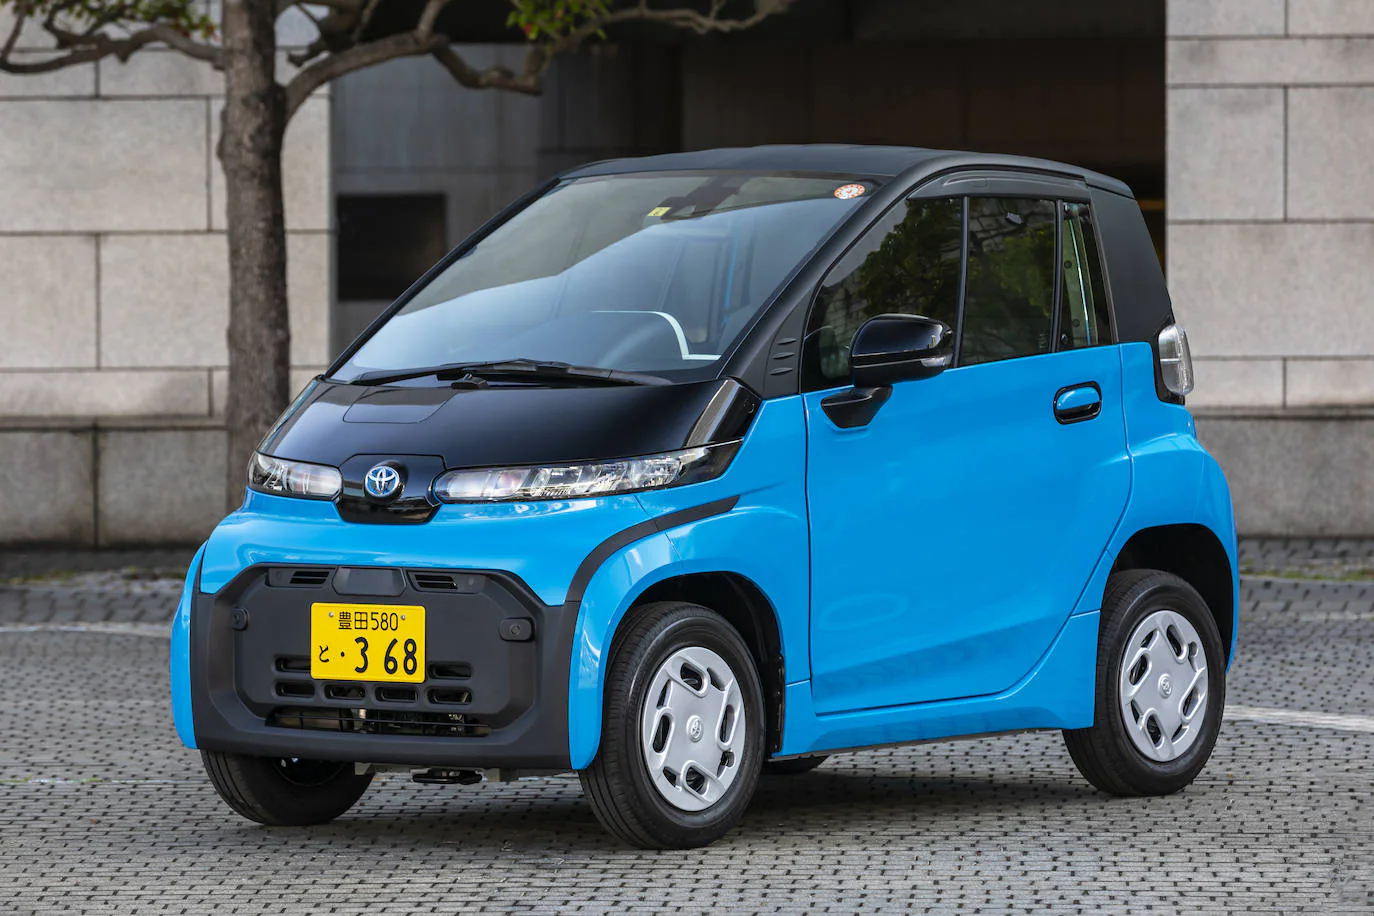 Fotos: Toyota lanza en Japón el ultracompacto C+pod 100% eléctrico